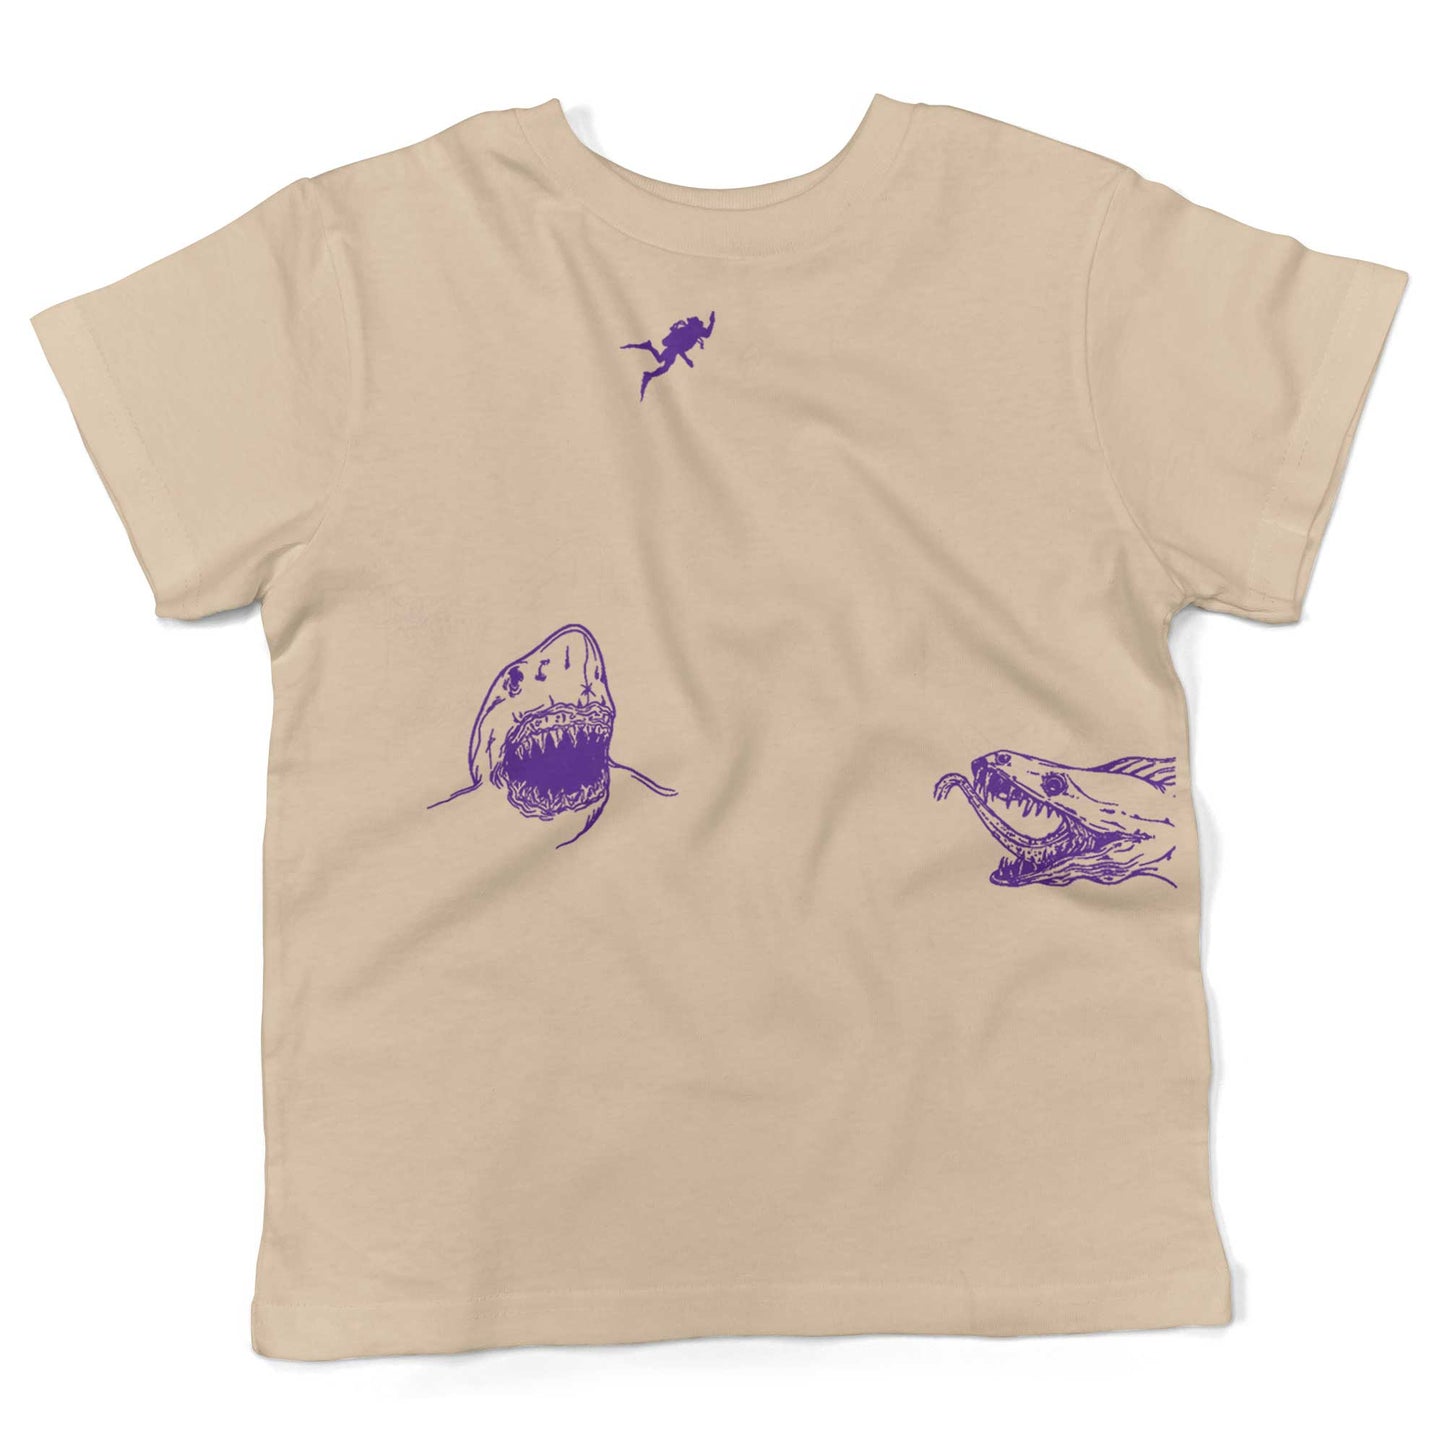 Scuba Diving Toddler Shirt-Organic Natural-2T